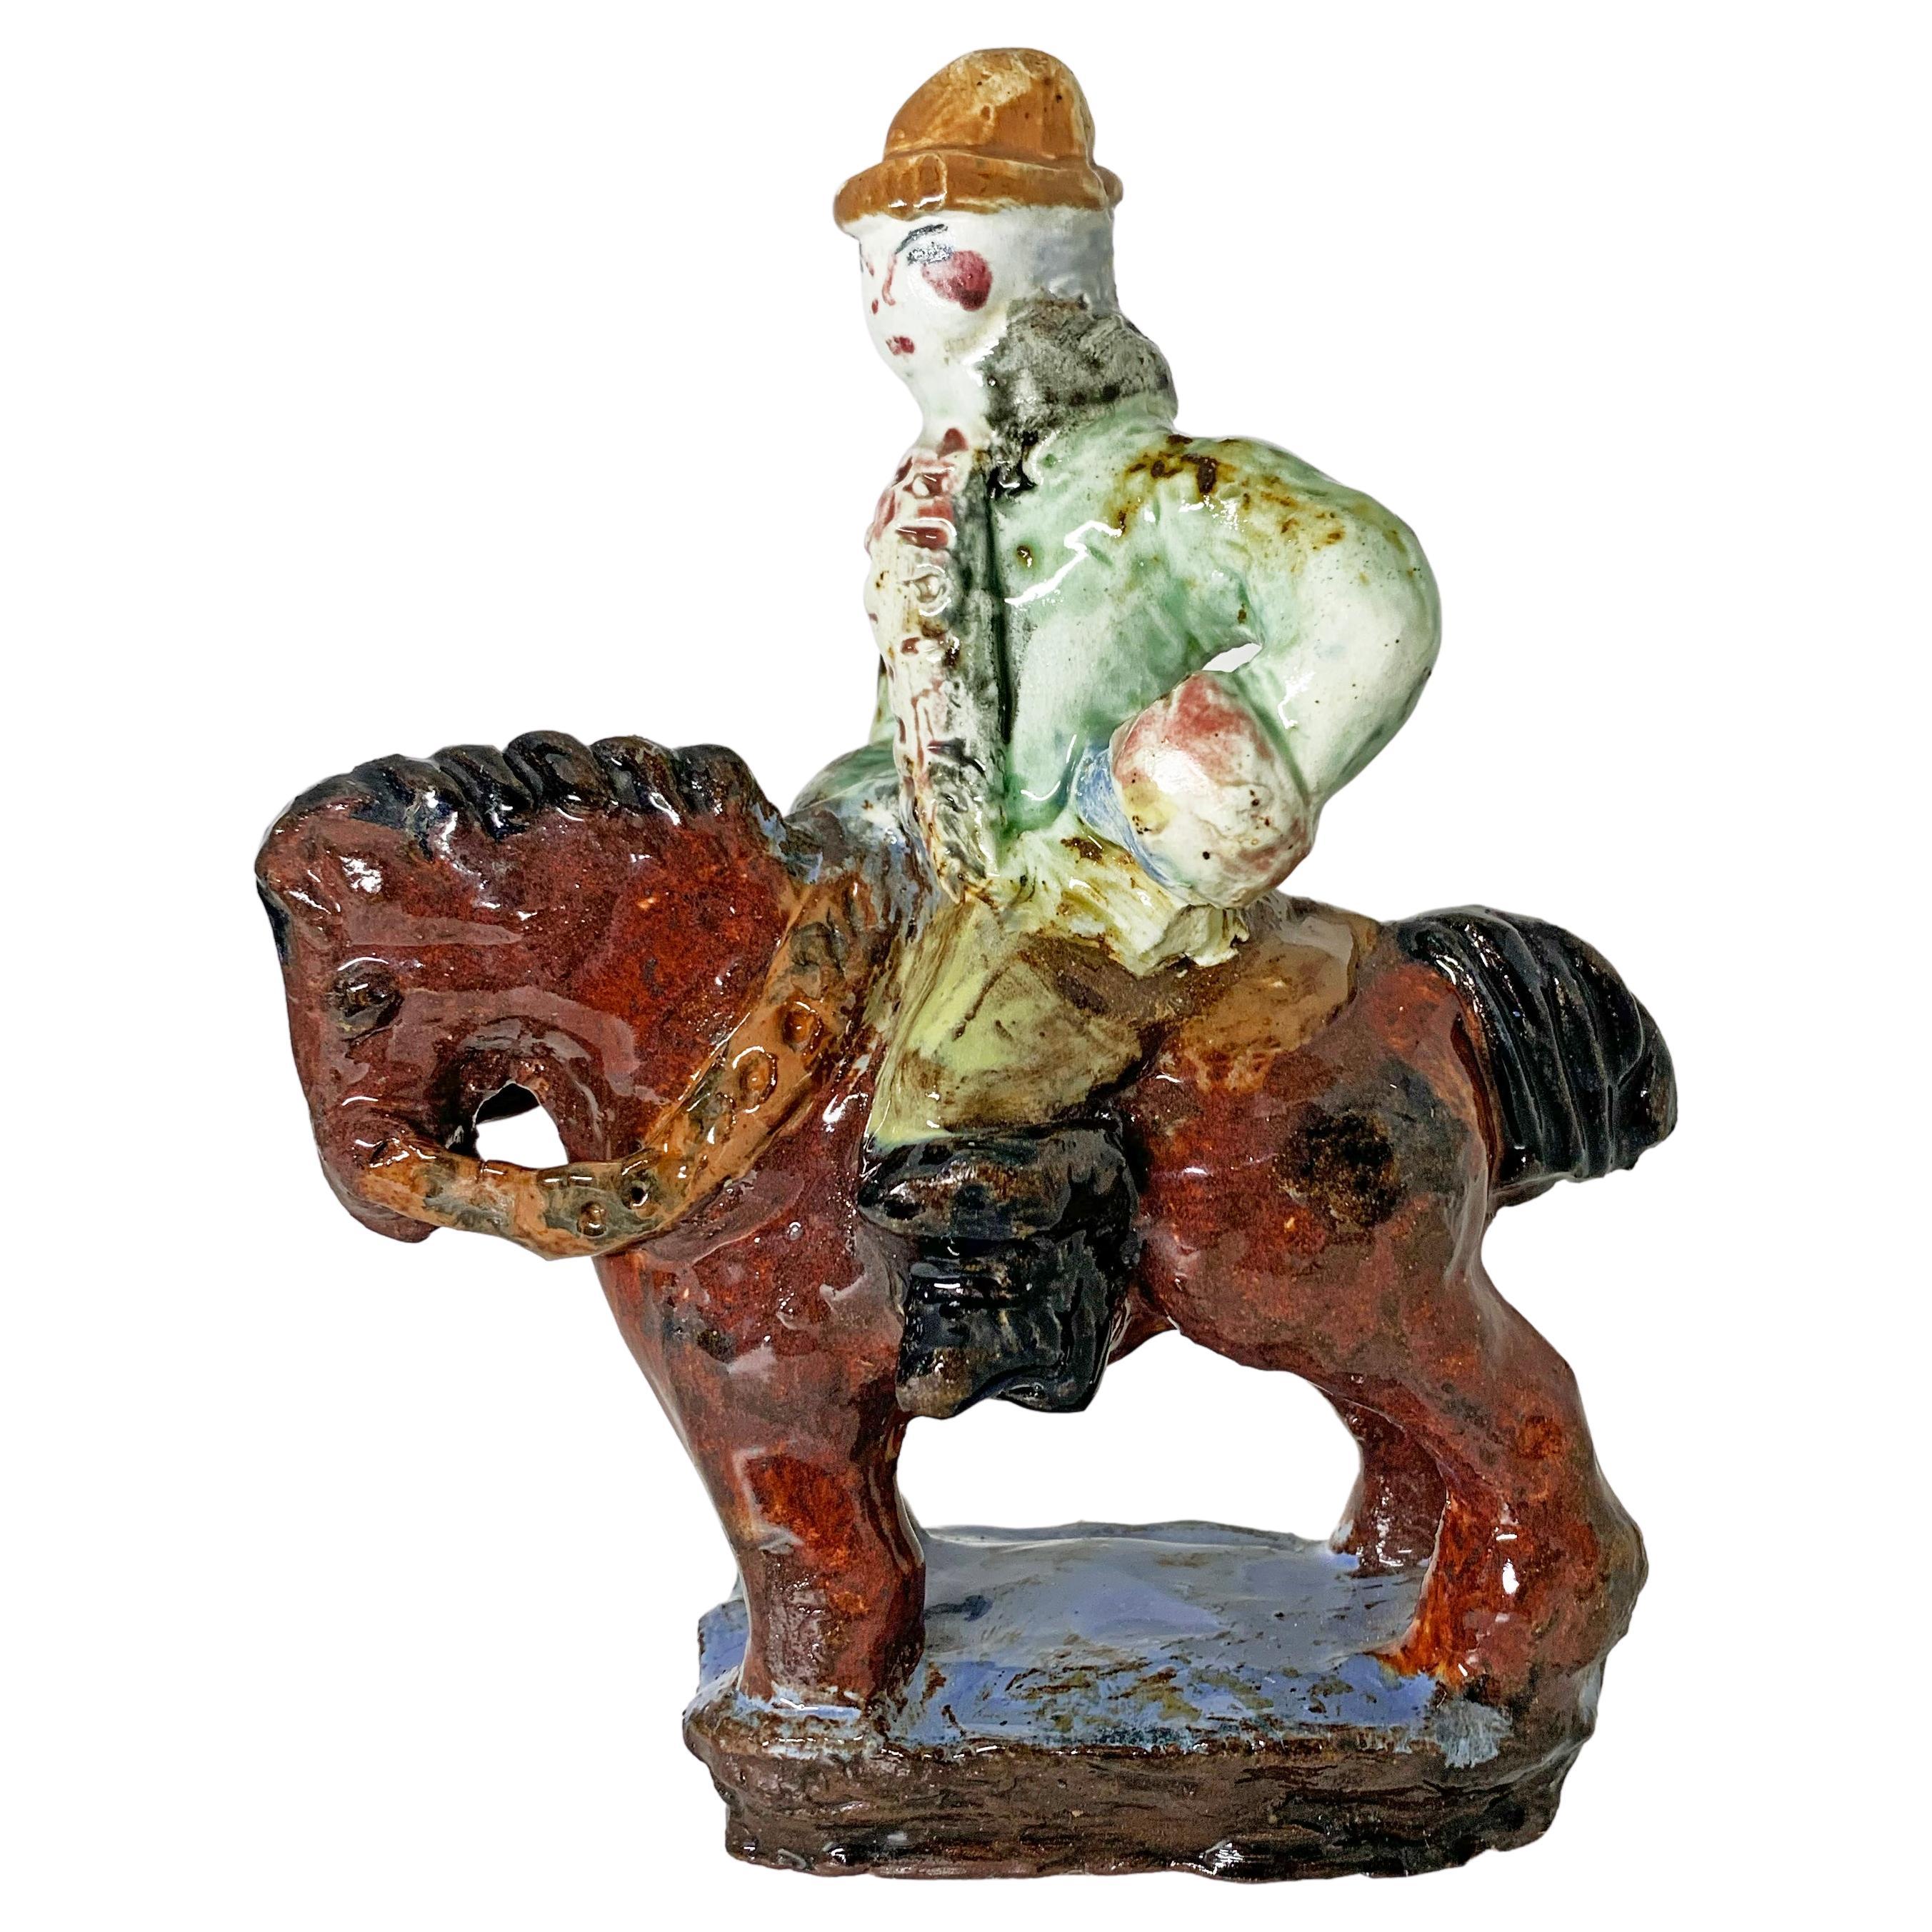 Weiner Werkstätte - "Man on Horseback" Ceramic Sculpture by Reni Schaschi 